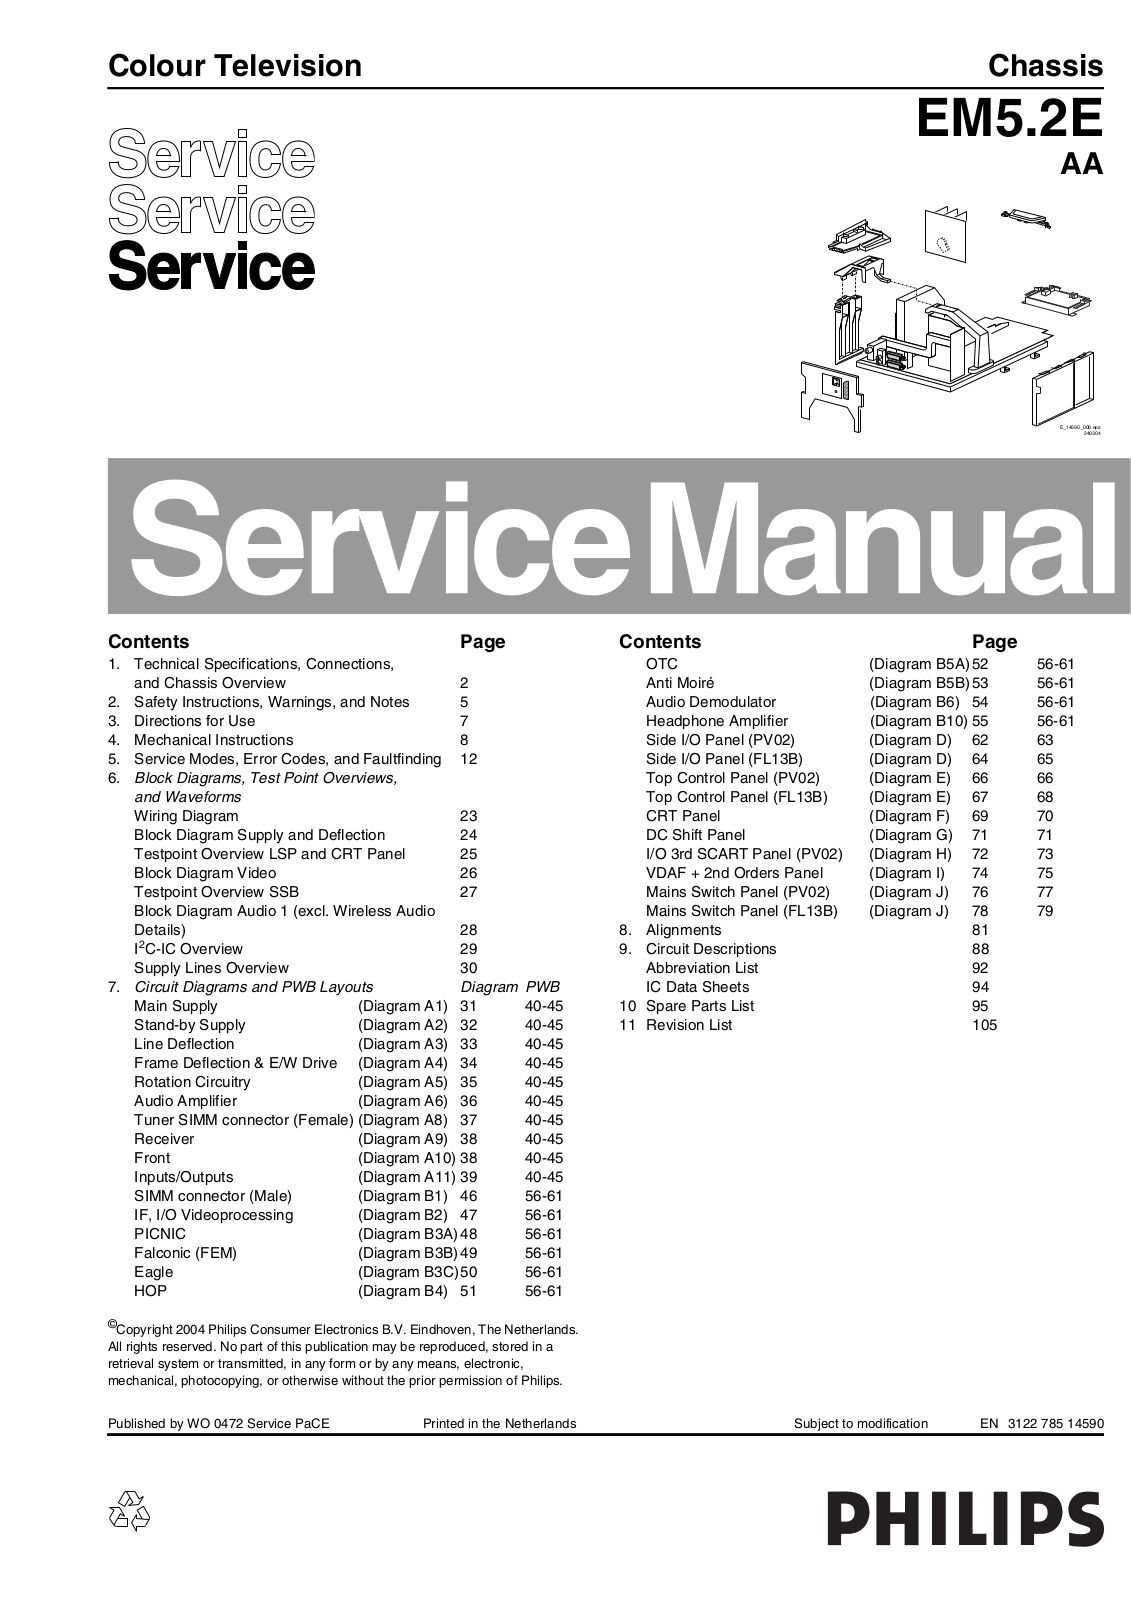 Philips EM5.2E AA Service Manual